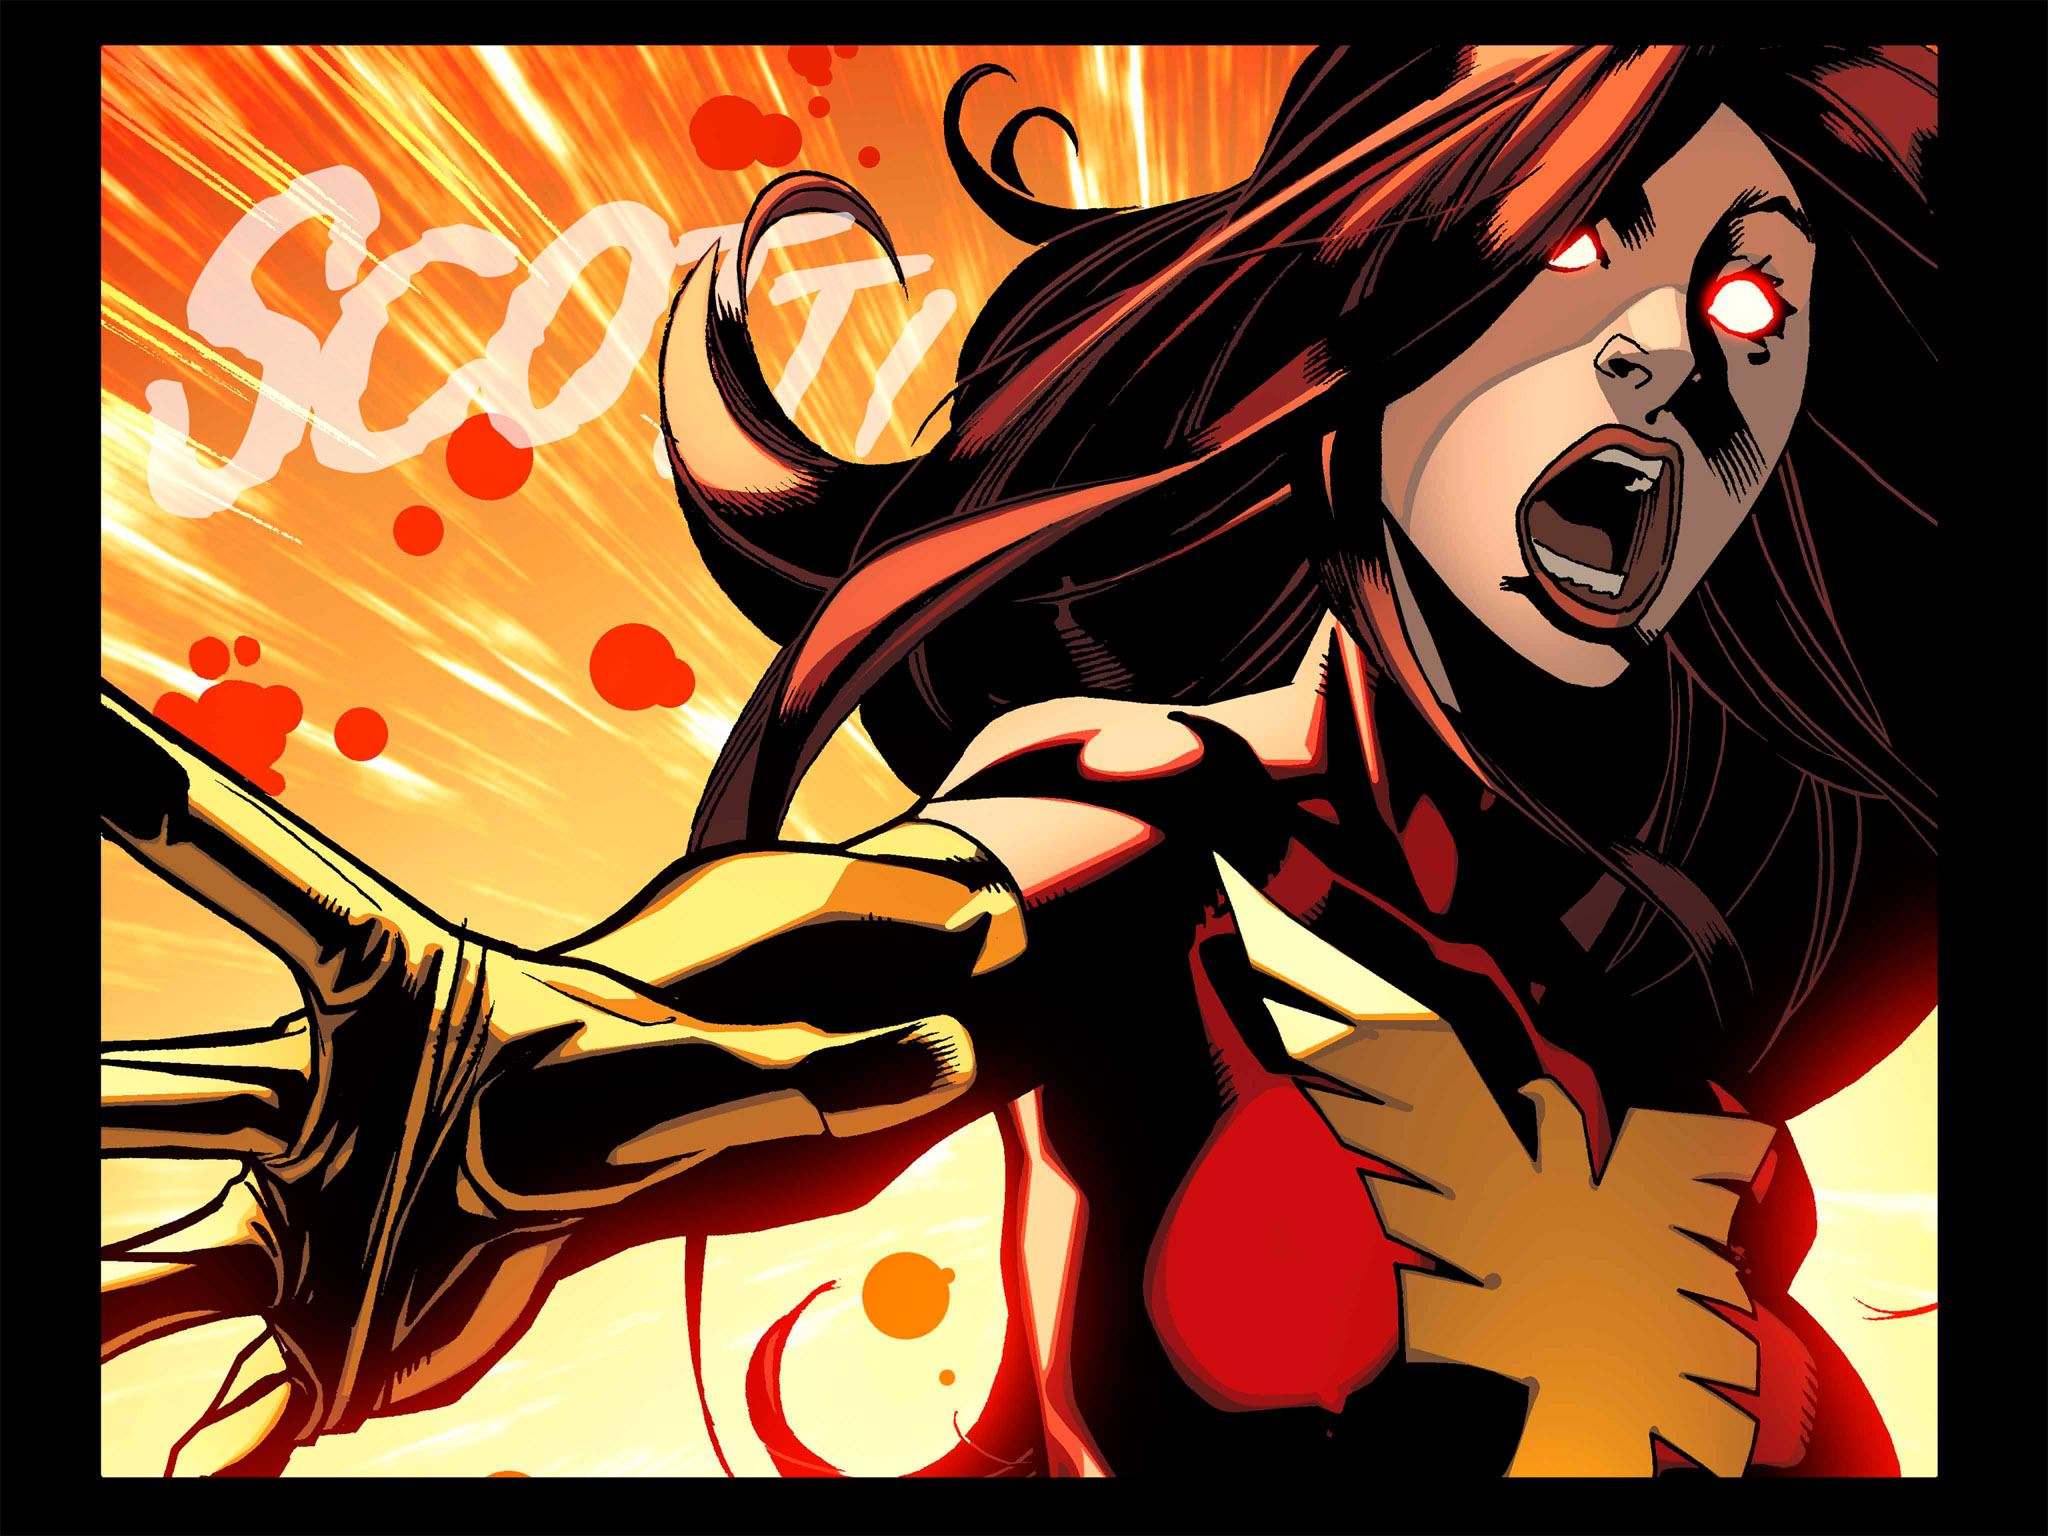 Read online Avengers vs. X-Men: Infinite comic -  Issue #6 - 30